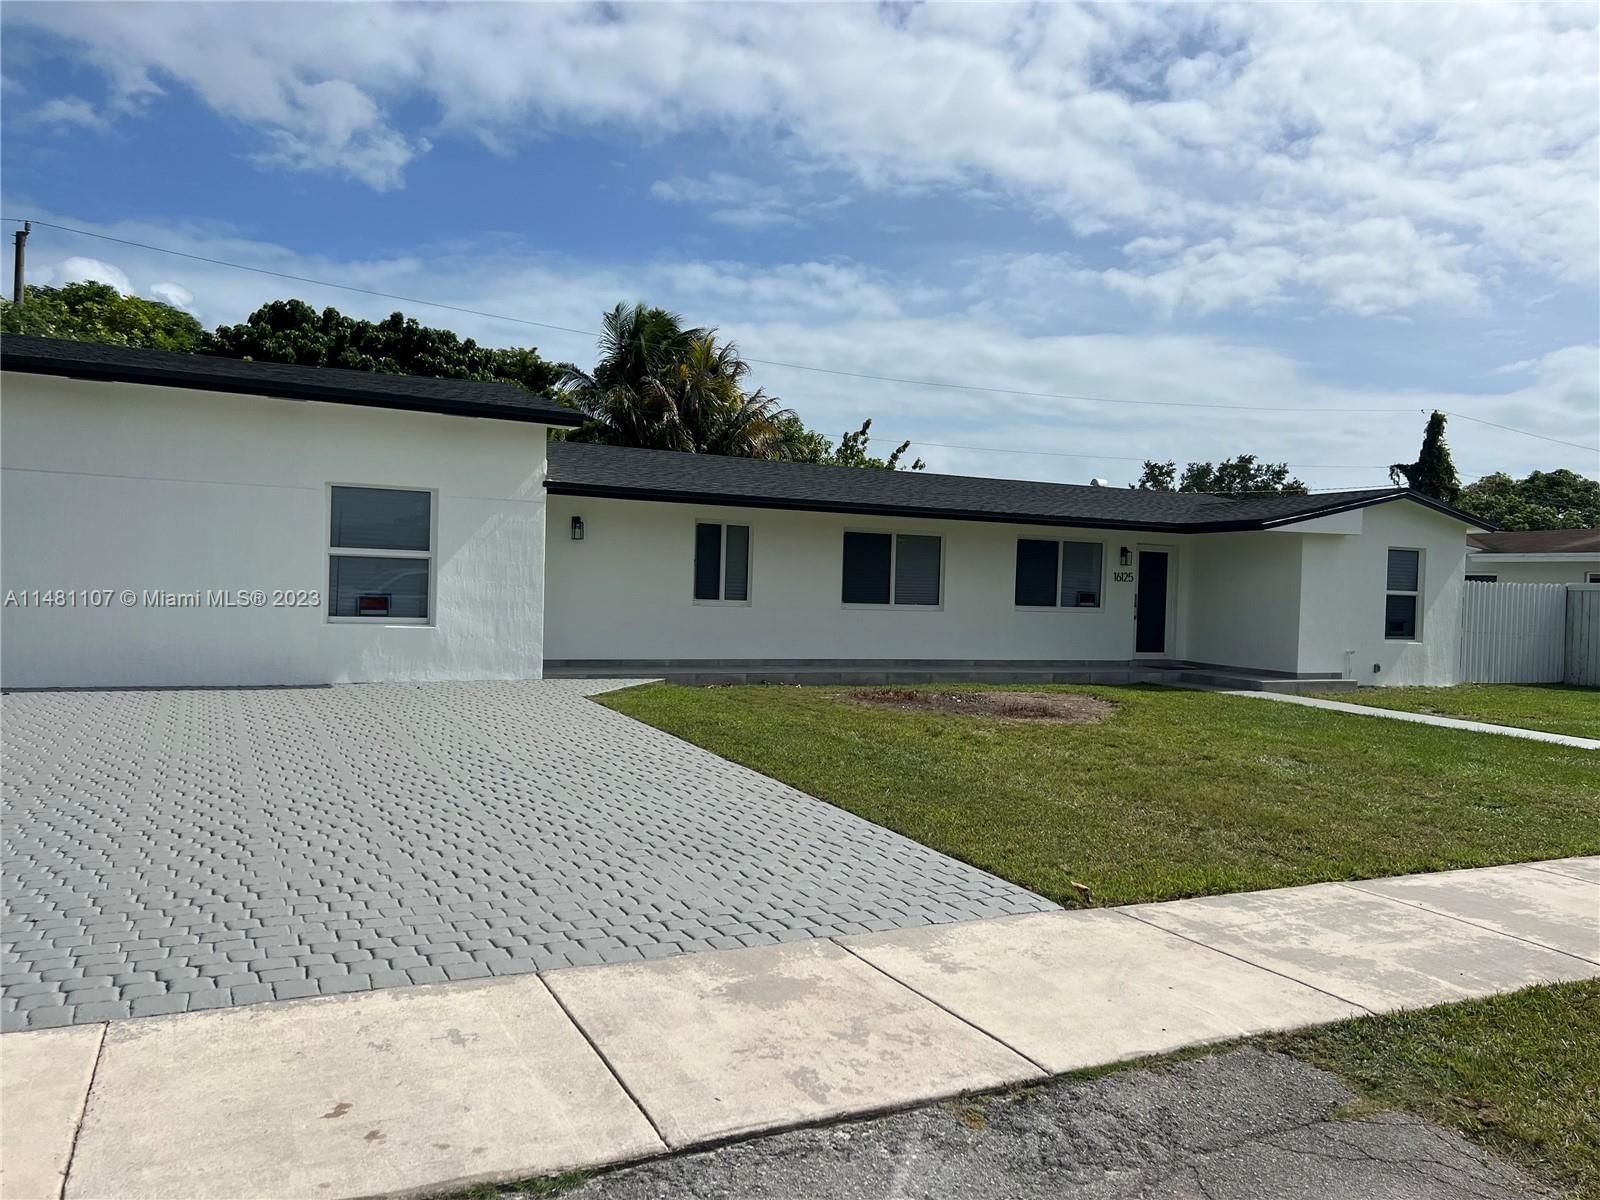 Real estate property located at 16125 98th Ct, Miami-Dade County, PALMETTO COUNTRY CLUB EST, Miami, FL